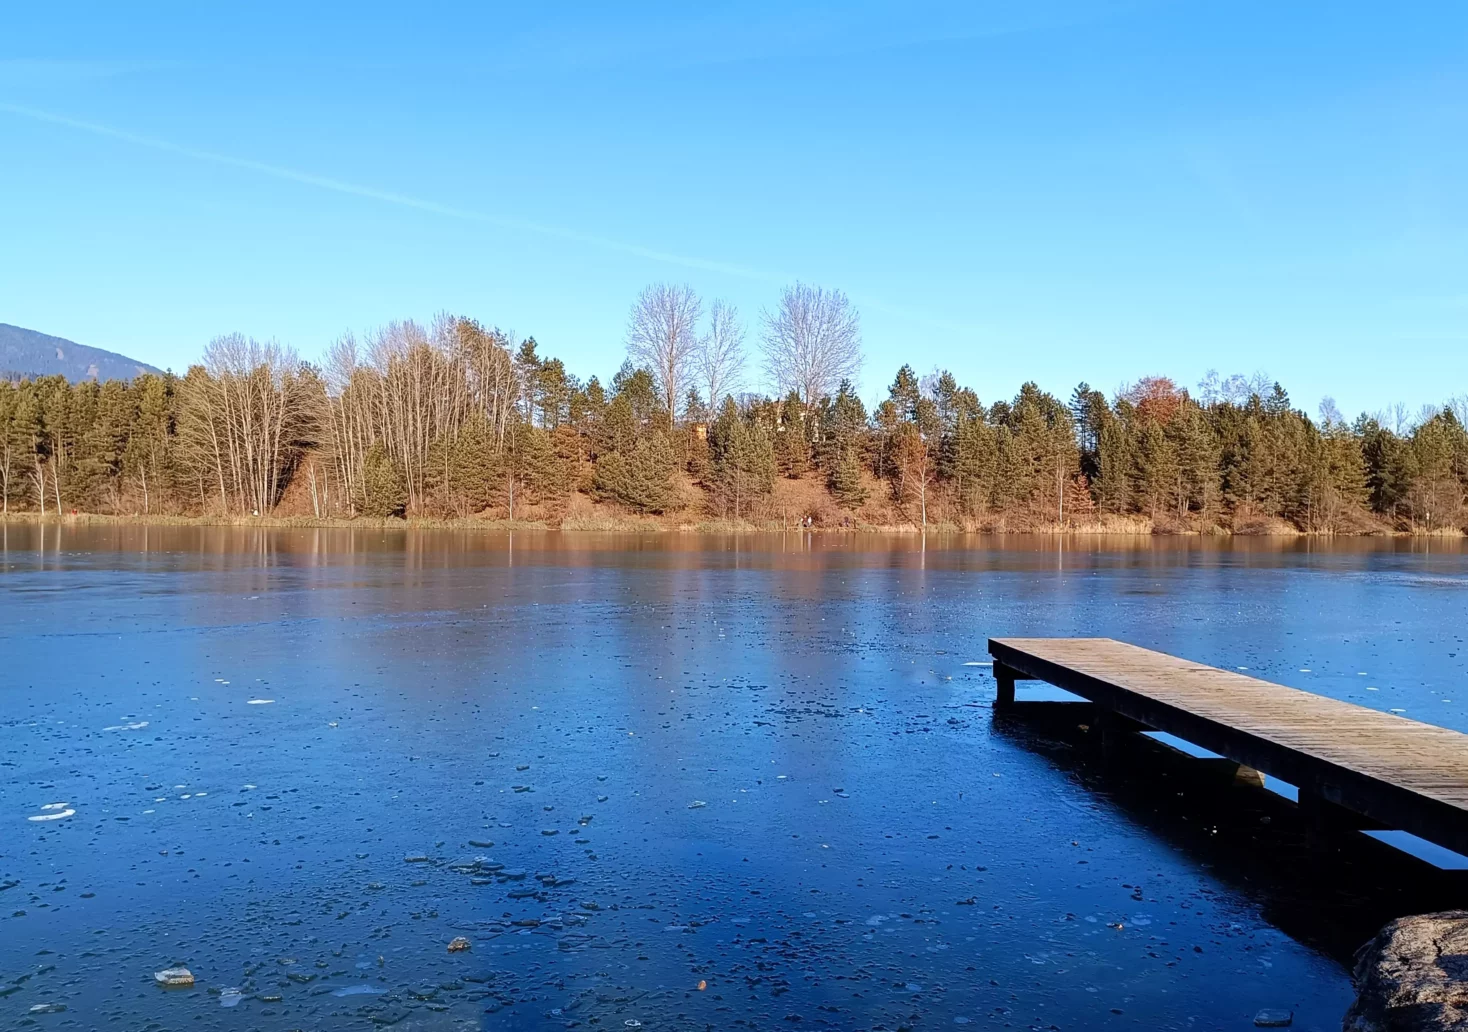 Bild auf 5min.at zeigt den leicht zugefrorenen Silbersee.